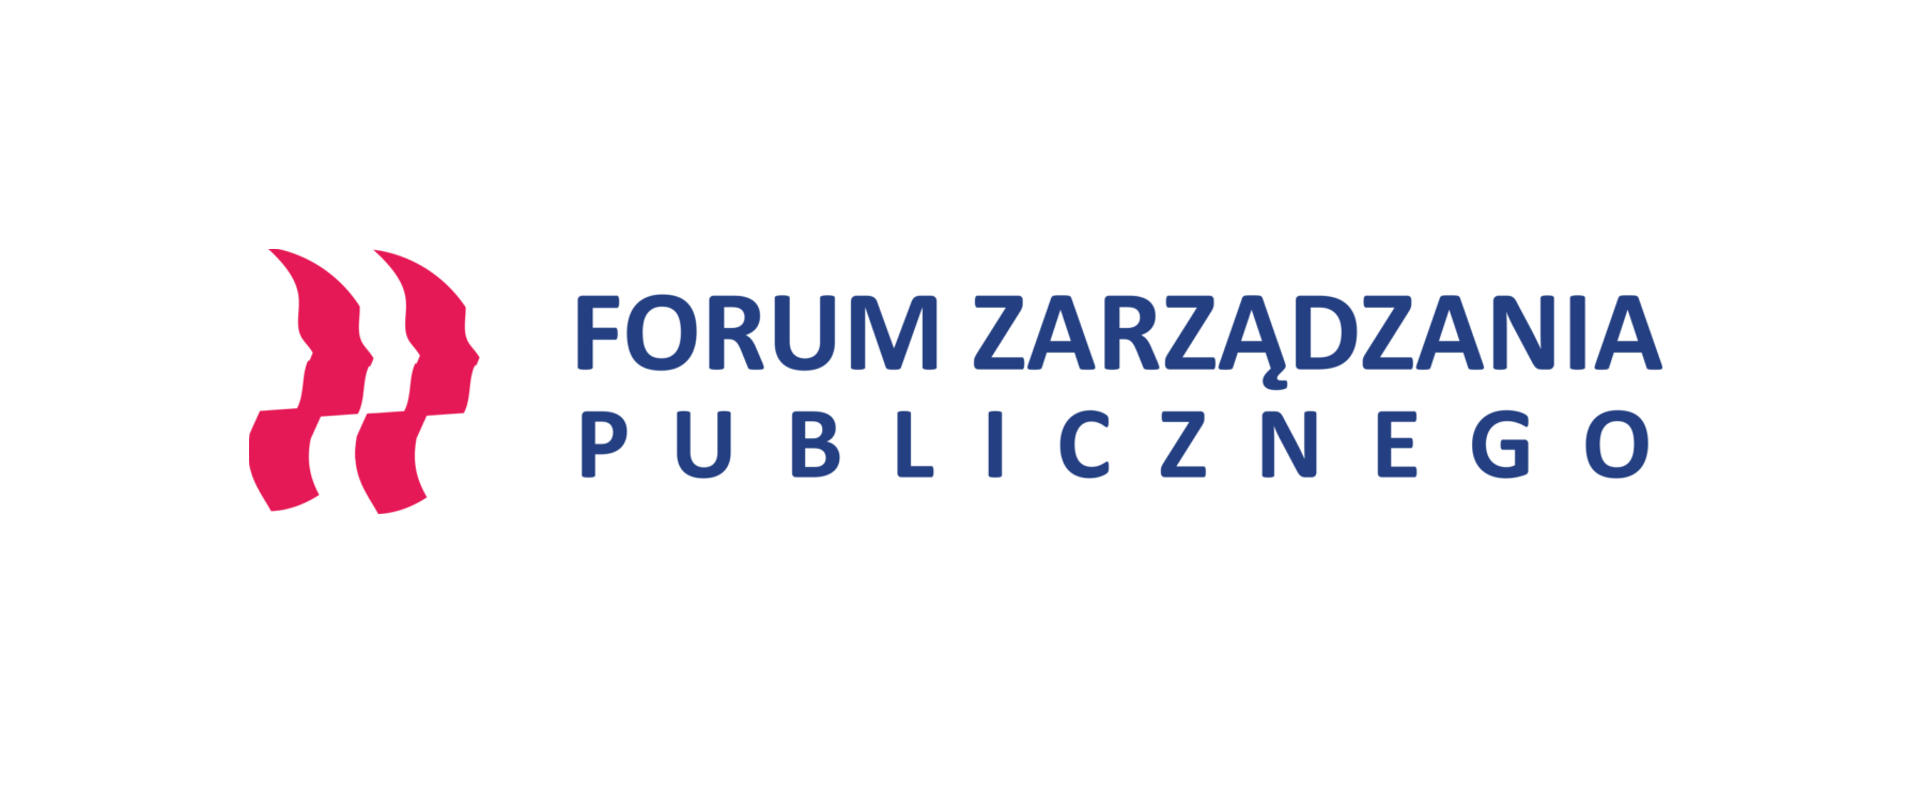 Logo Forum Zarządzania Publicznego